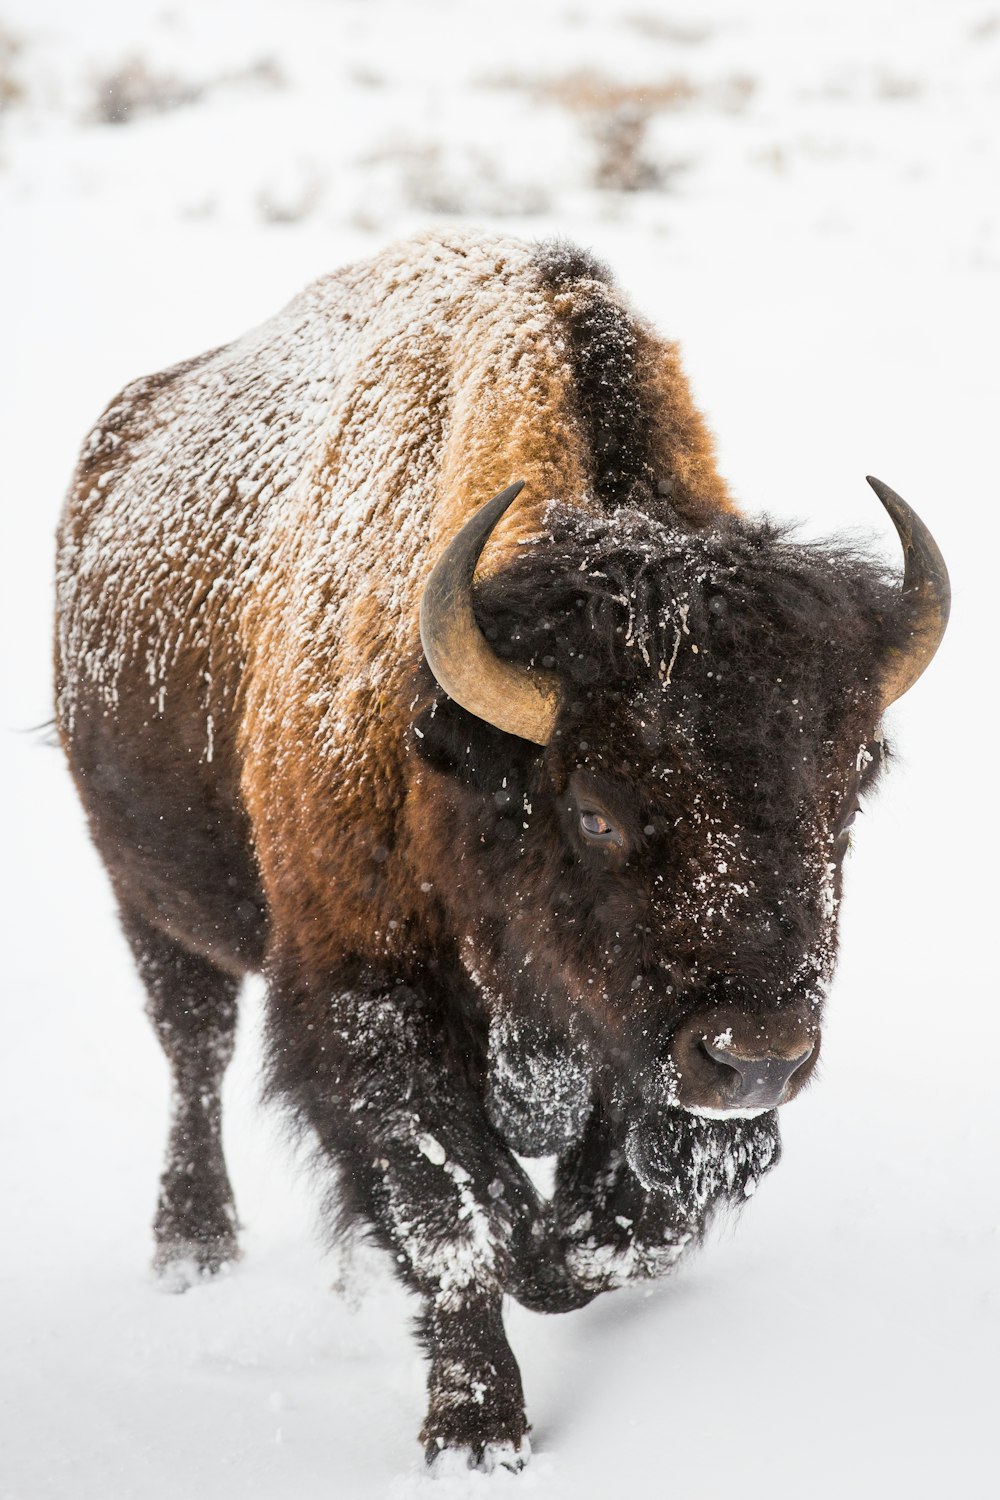 bison brun sur un sol recouvert de neige blanche pendant la journée